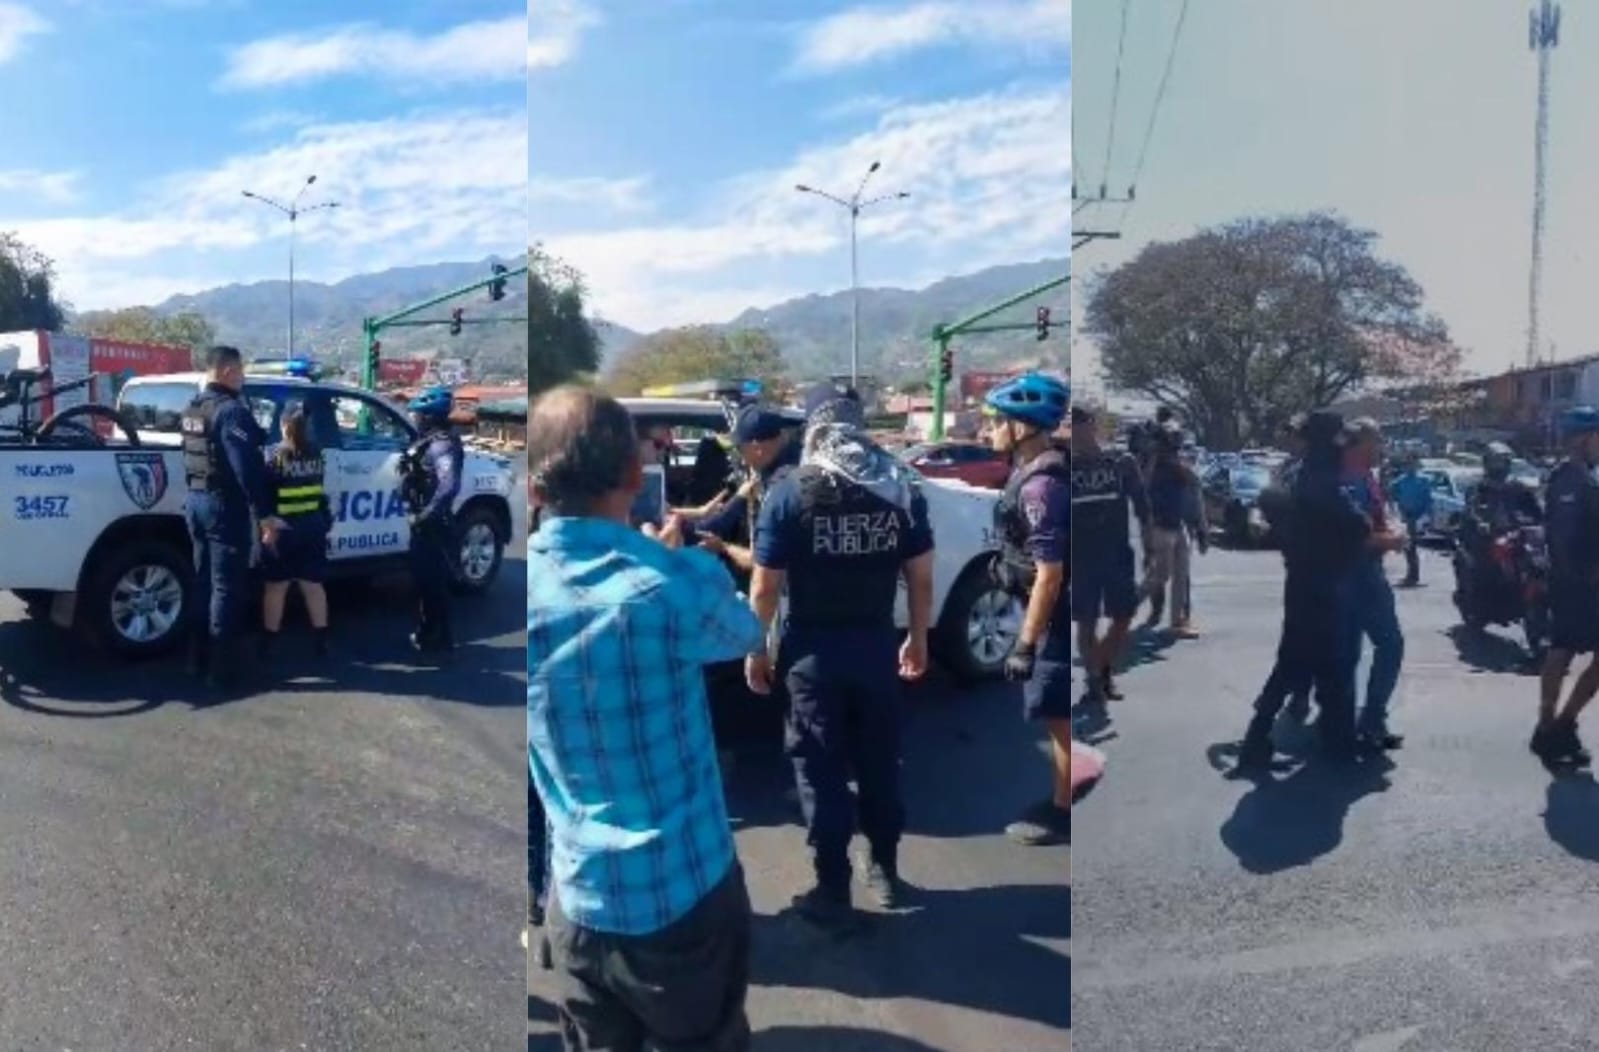 Fuerza Pública detuvo a 9 personas que se manifestaban por abastecimientos controlados del AyA en Hatillo